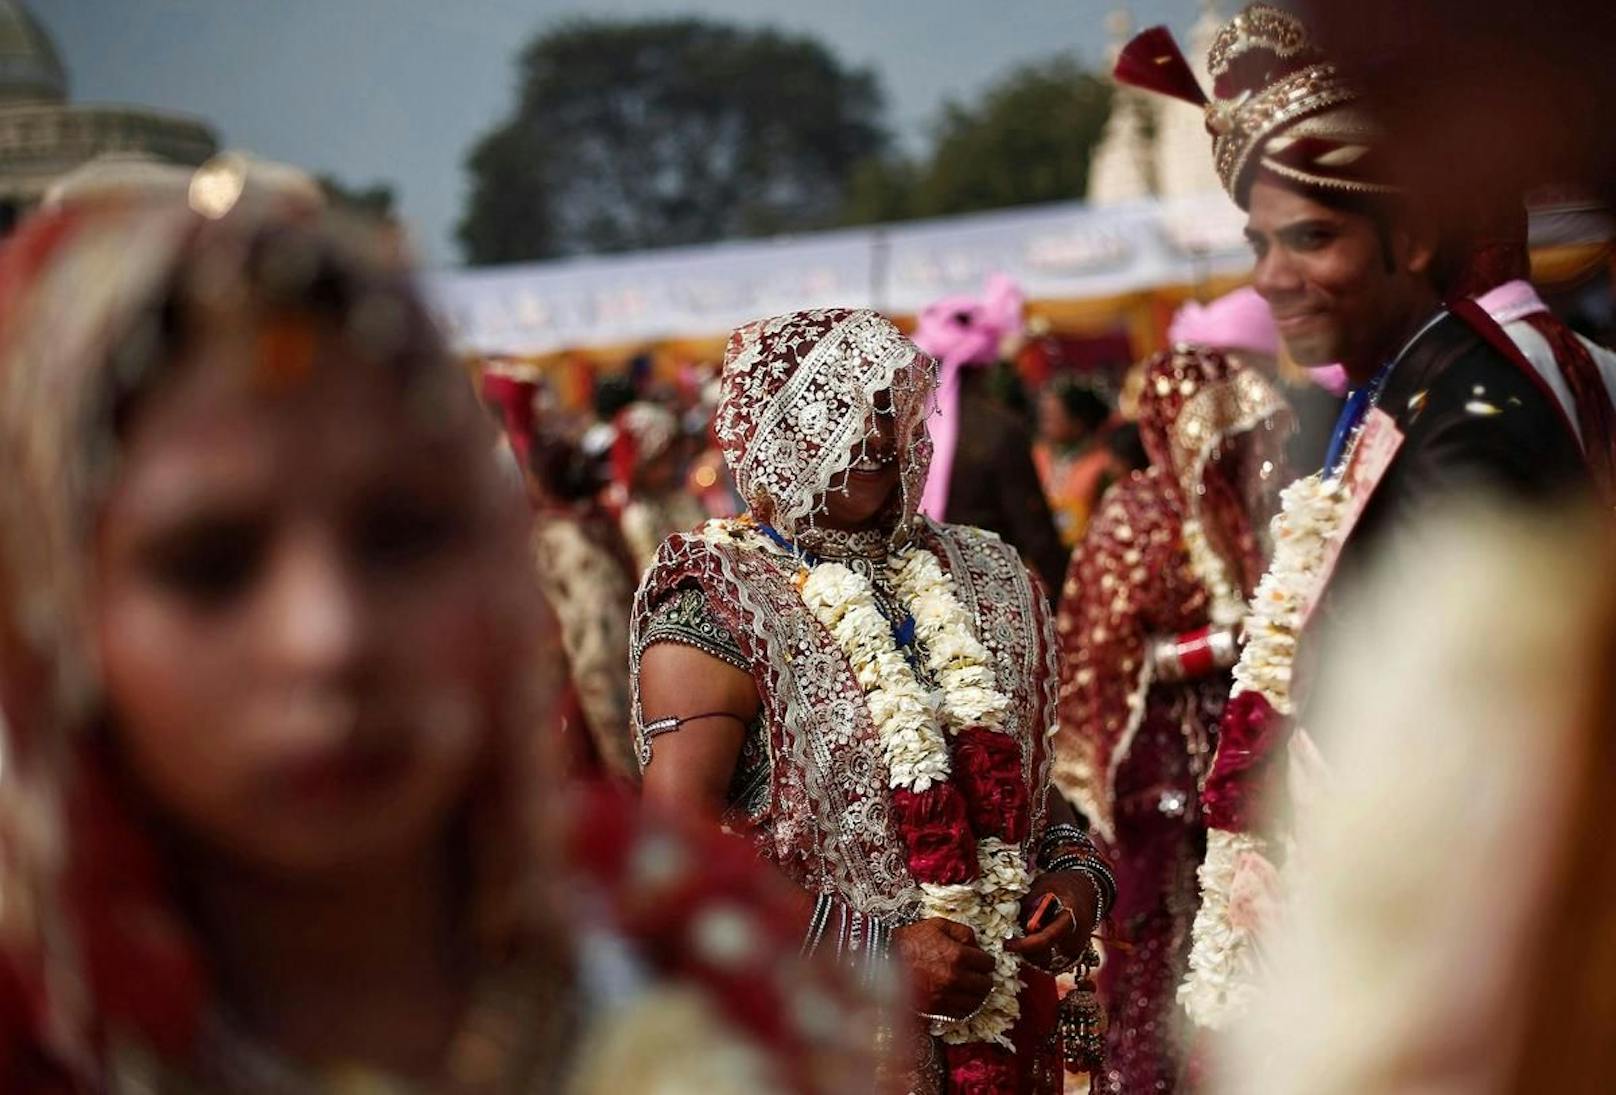 Hochzeiten sind in Indien meist eine große Angelegenheit mit vielen Gästen.